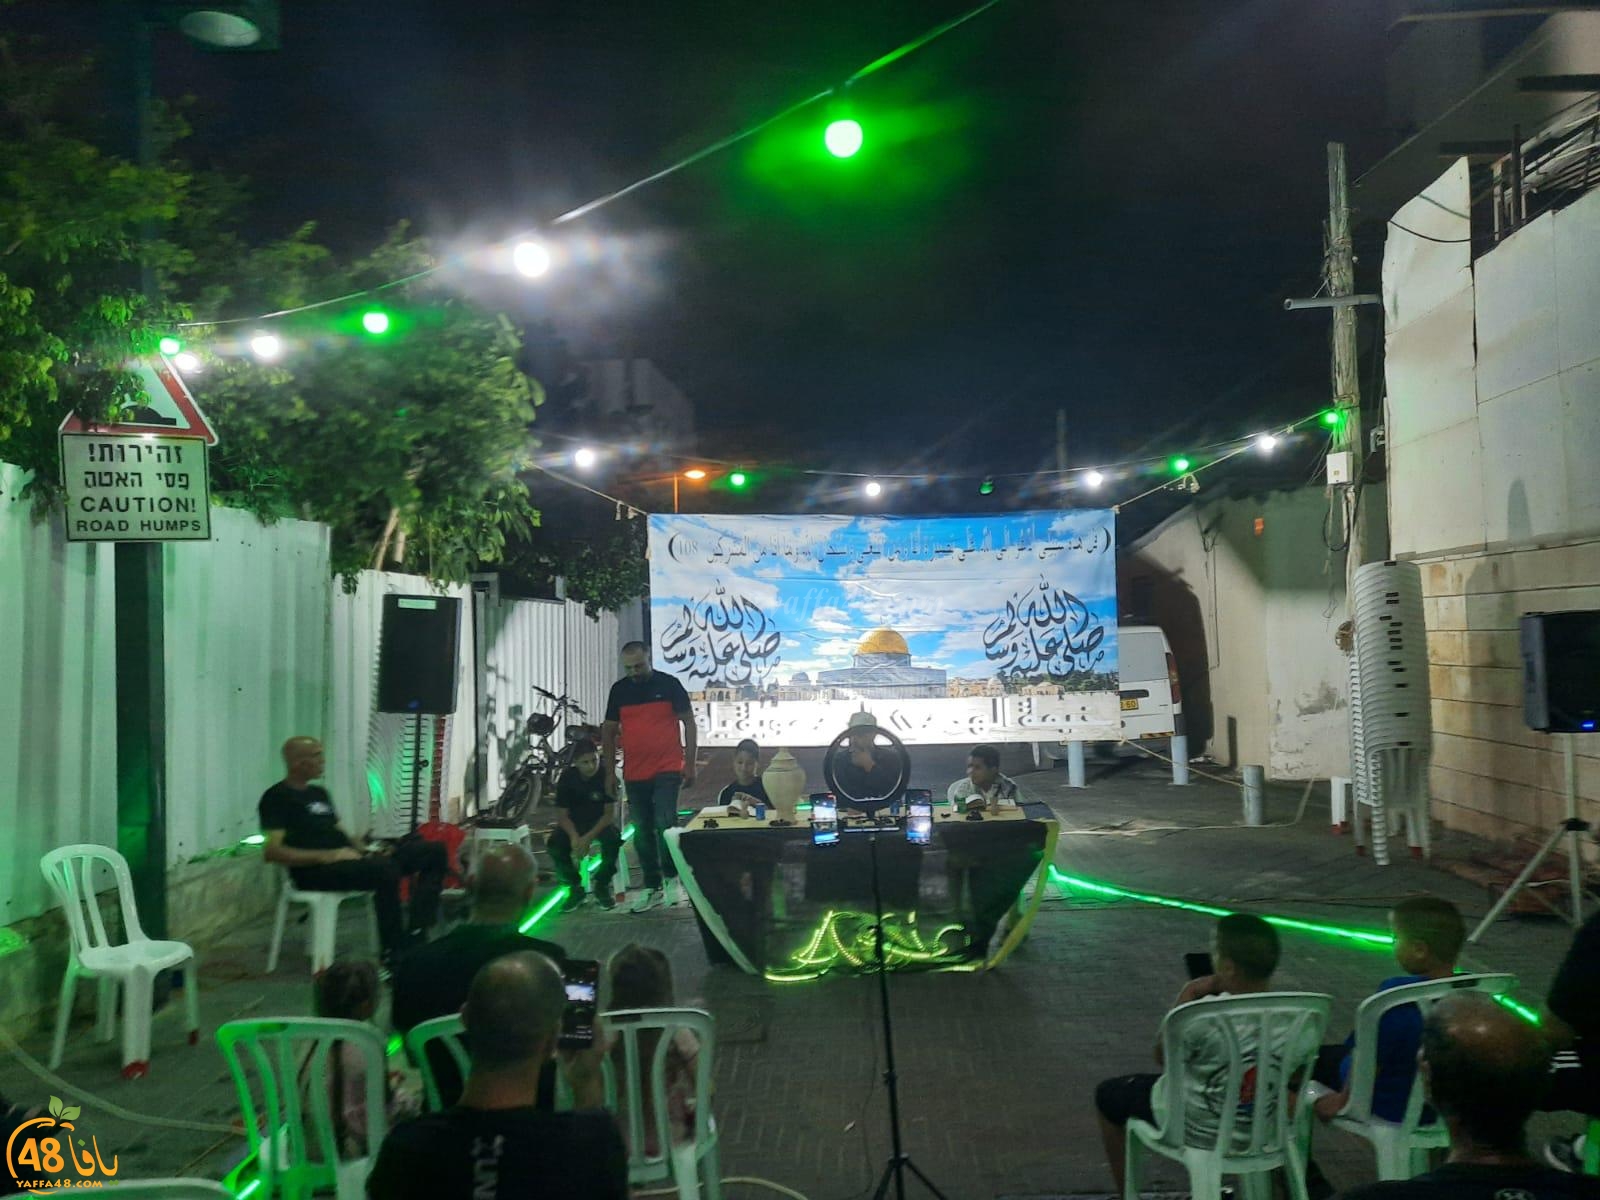 خيمة الهدى الدعوية تستضيف الشيخ عبد المجيد الدرباشي في يافا